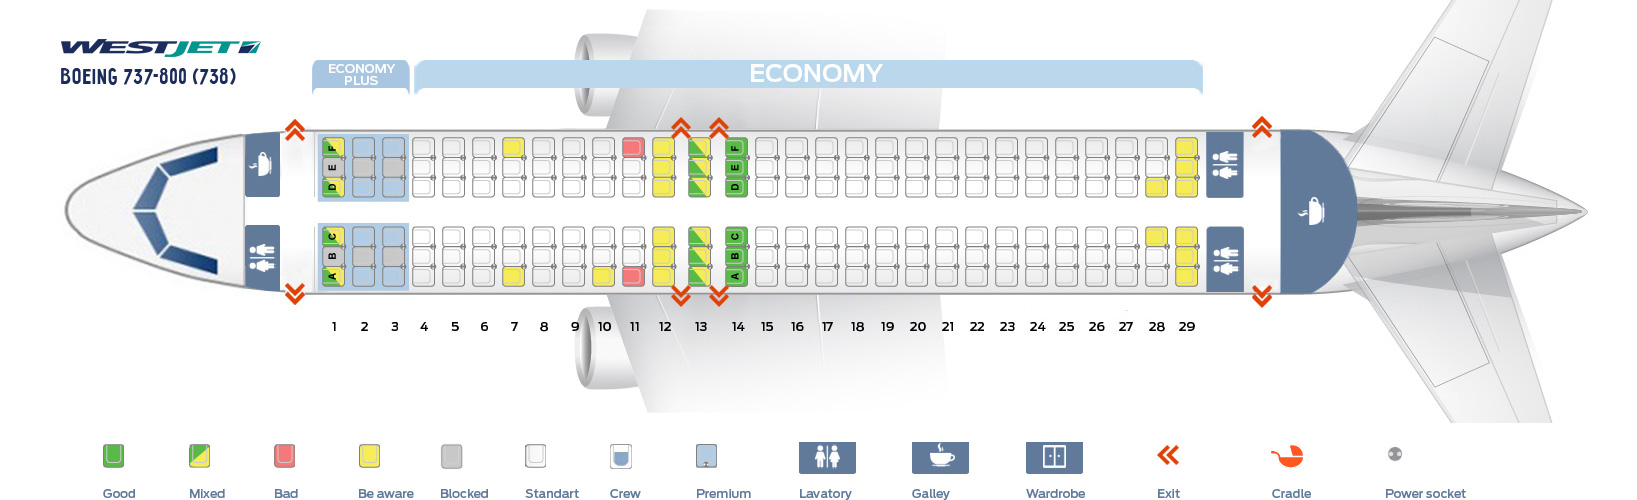 Westjet Seating Chart 737 Boeing